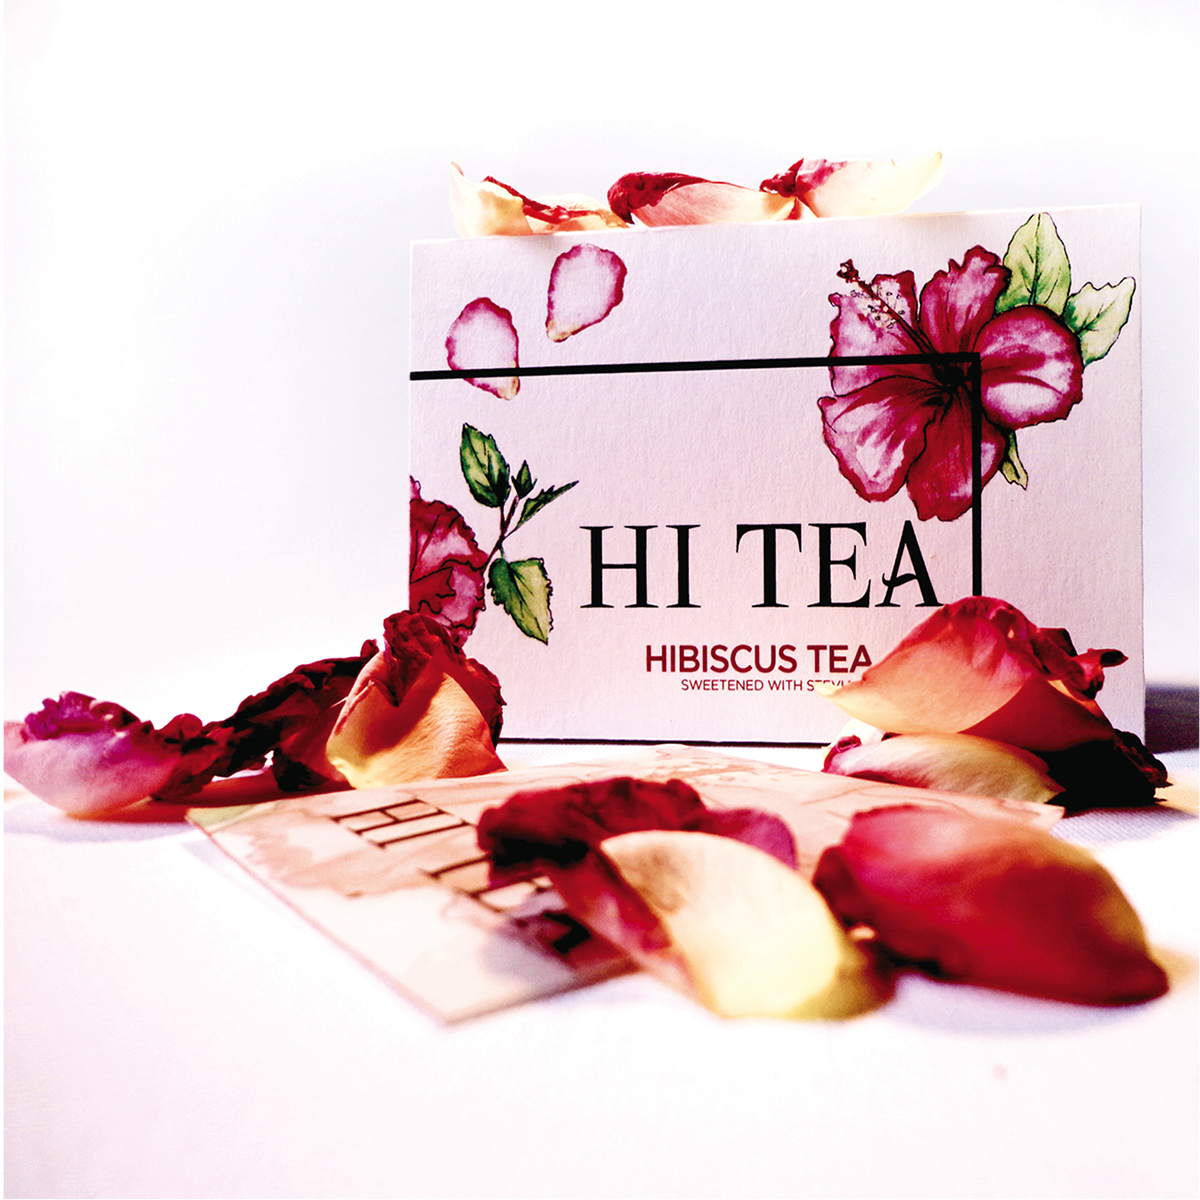 Hi Tea Hibiscus Tea Tea Packaging hibiscus Pink and Red design packaging de...